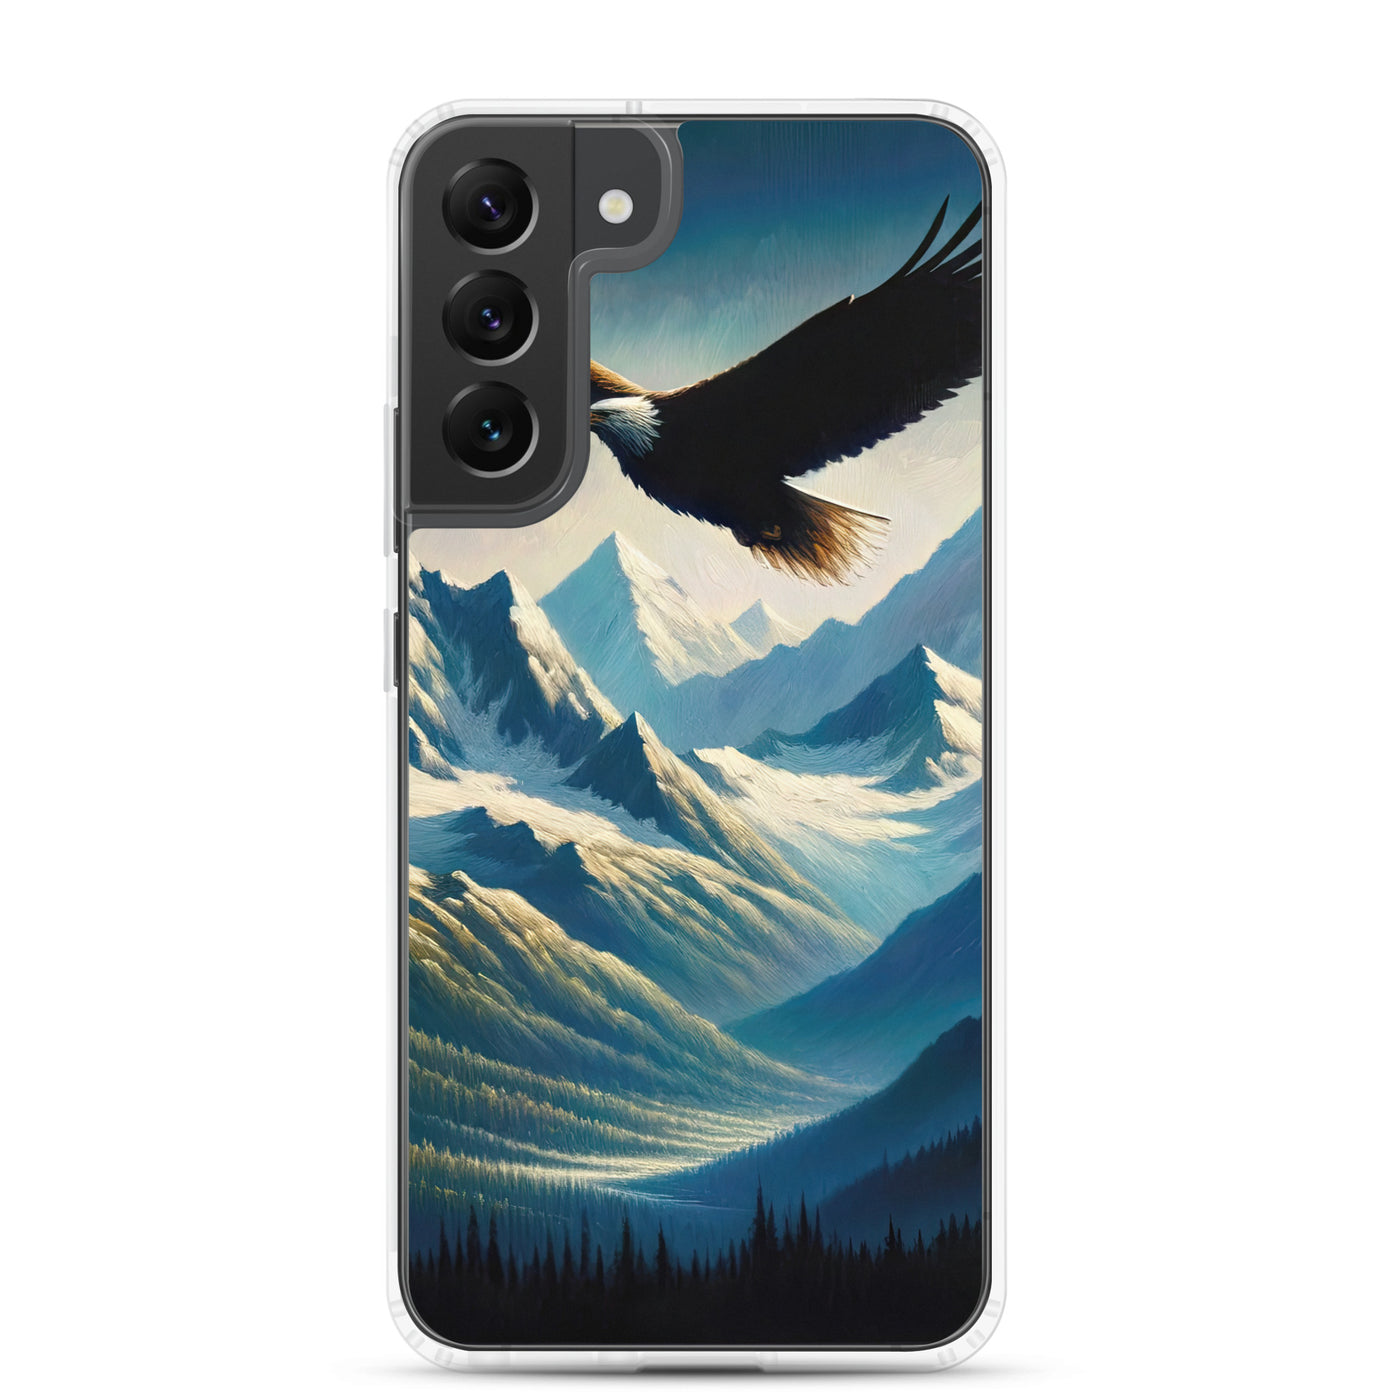 Ölgemälde eines Adlers vor schneebedeckten Bergsilhouetten - Samsung Schutzhülle (durchsichtig) berge xxx yyy zzz Samsung Galaxy S22 Plus